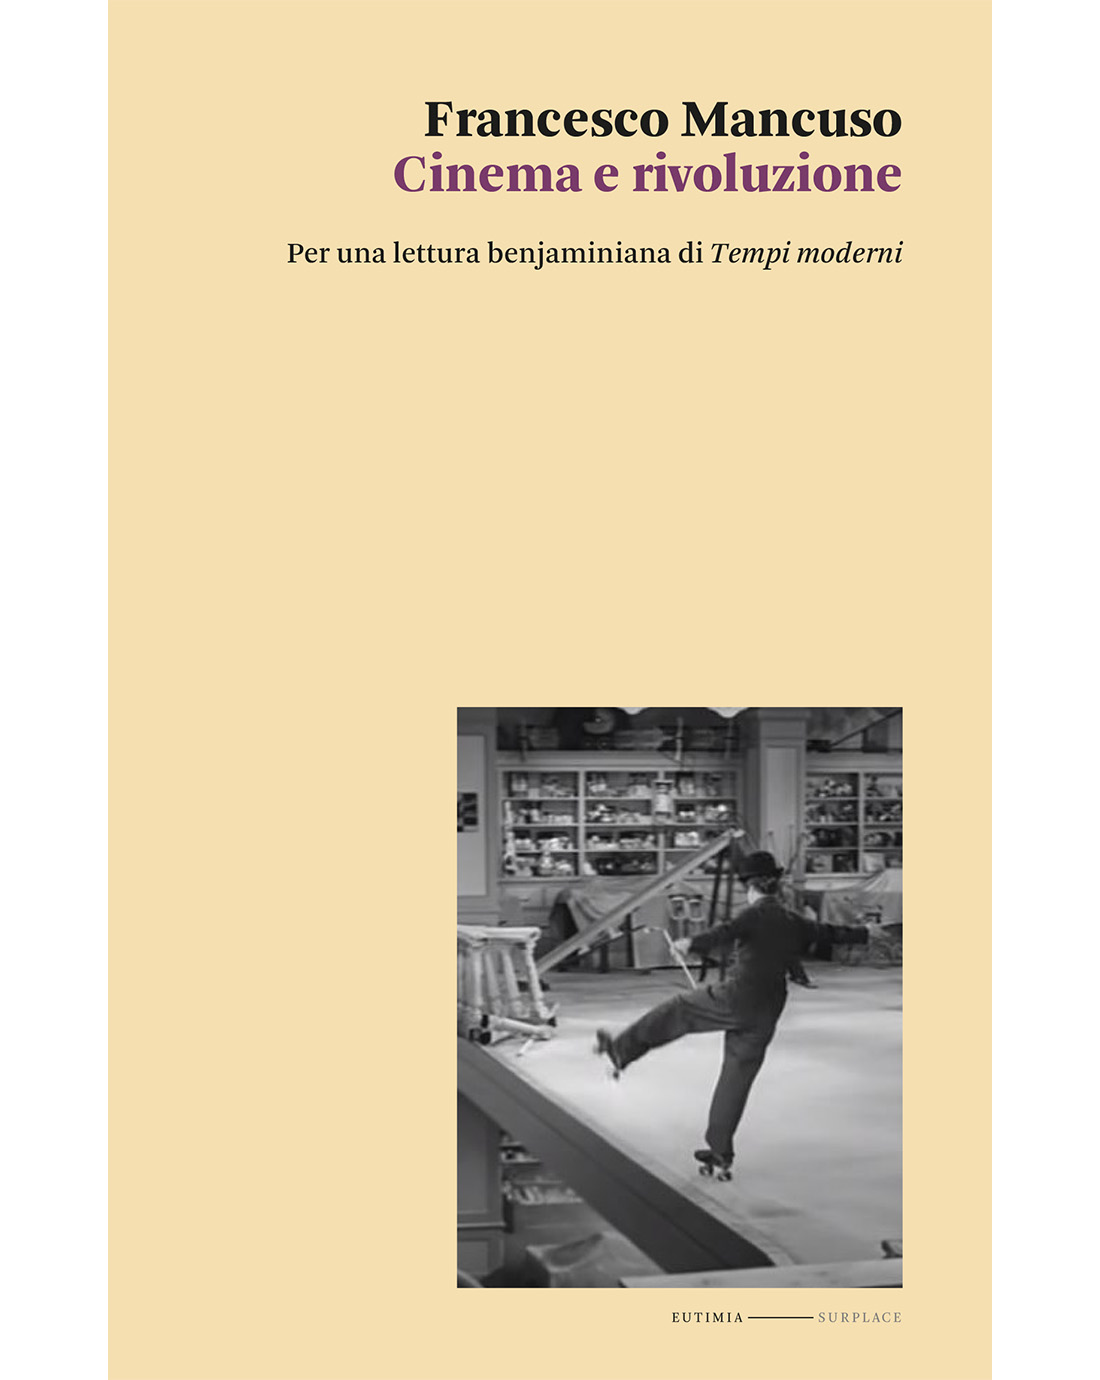 Cinema e rivoluzione